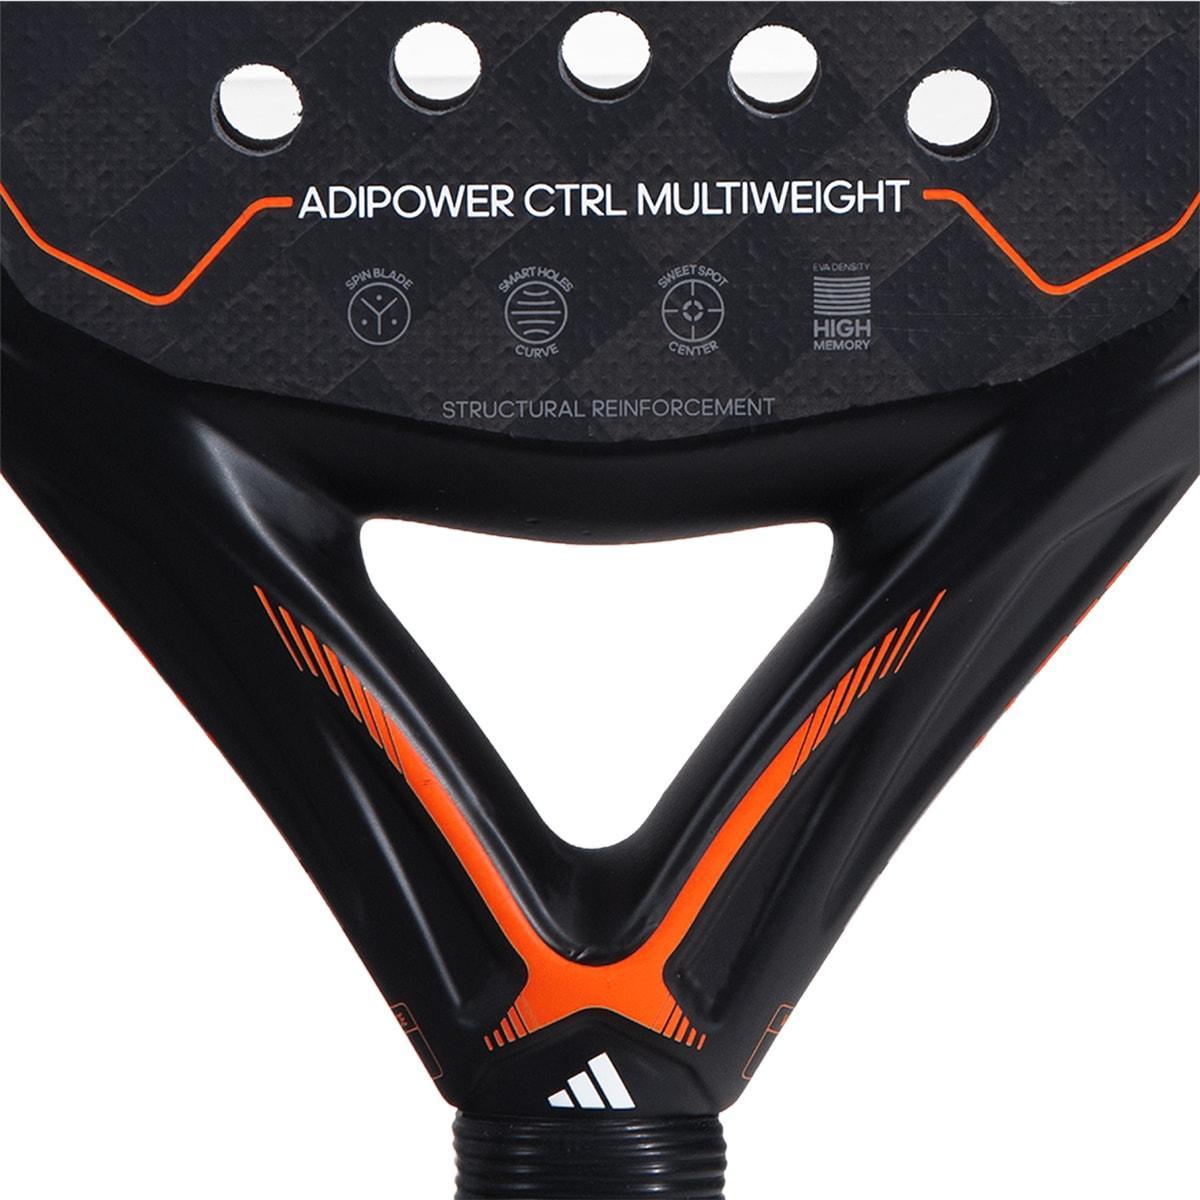 Adidas Adipower Multiweight CTRL Padelracket